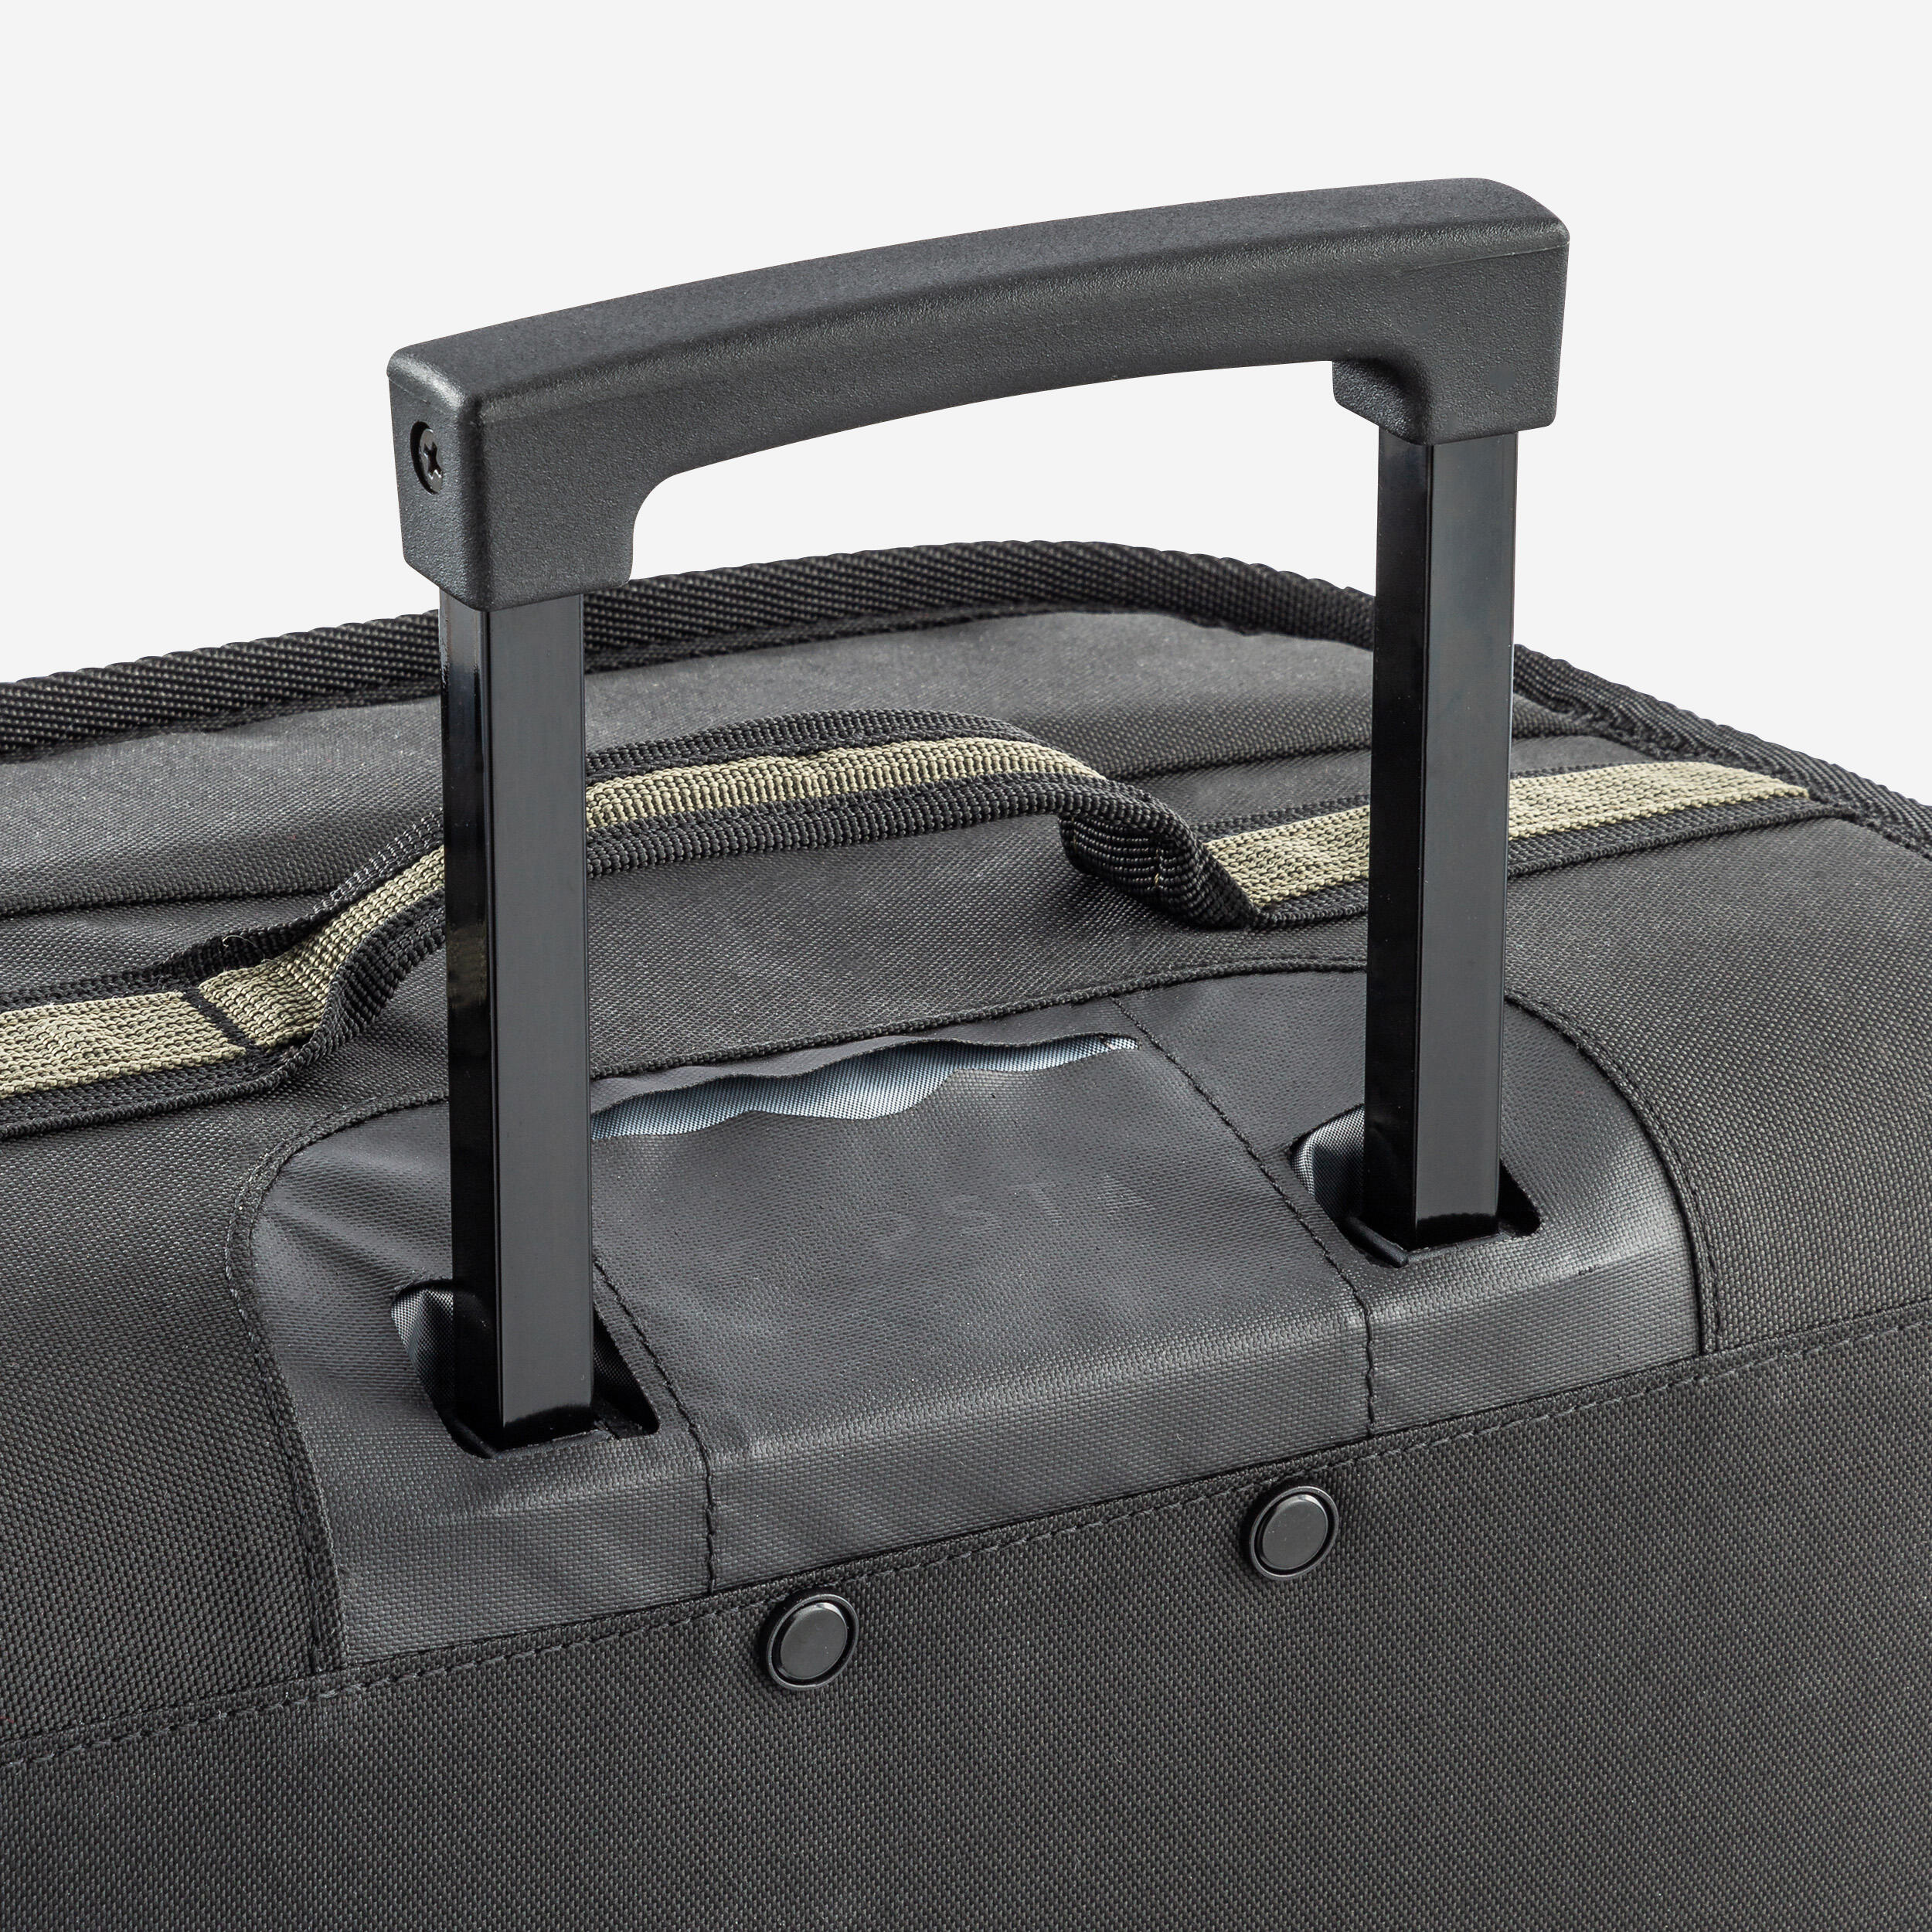 30L Suitcase Essential - Black/Khaki 6/11